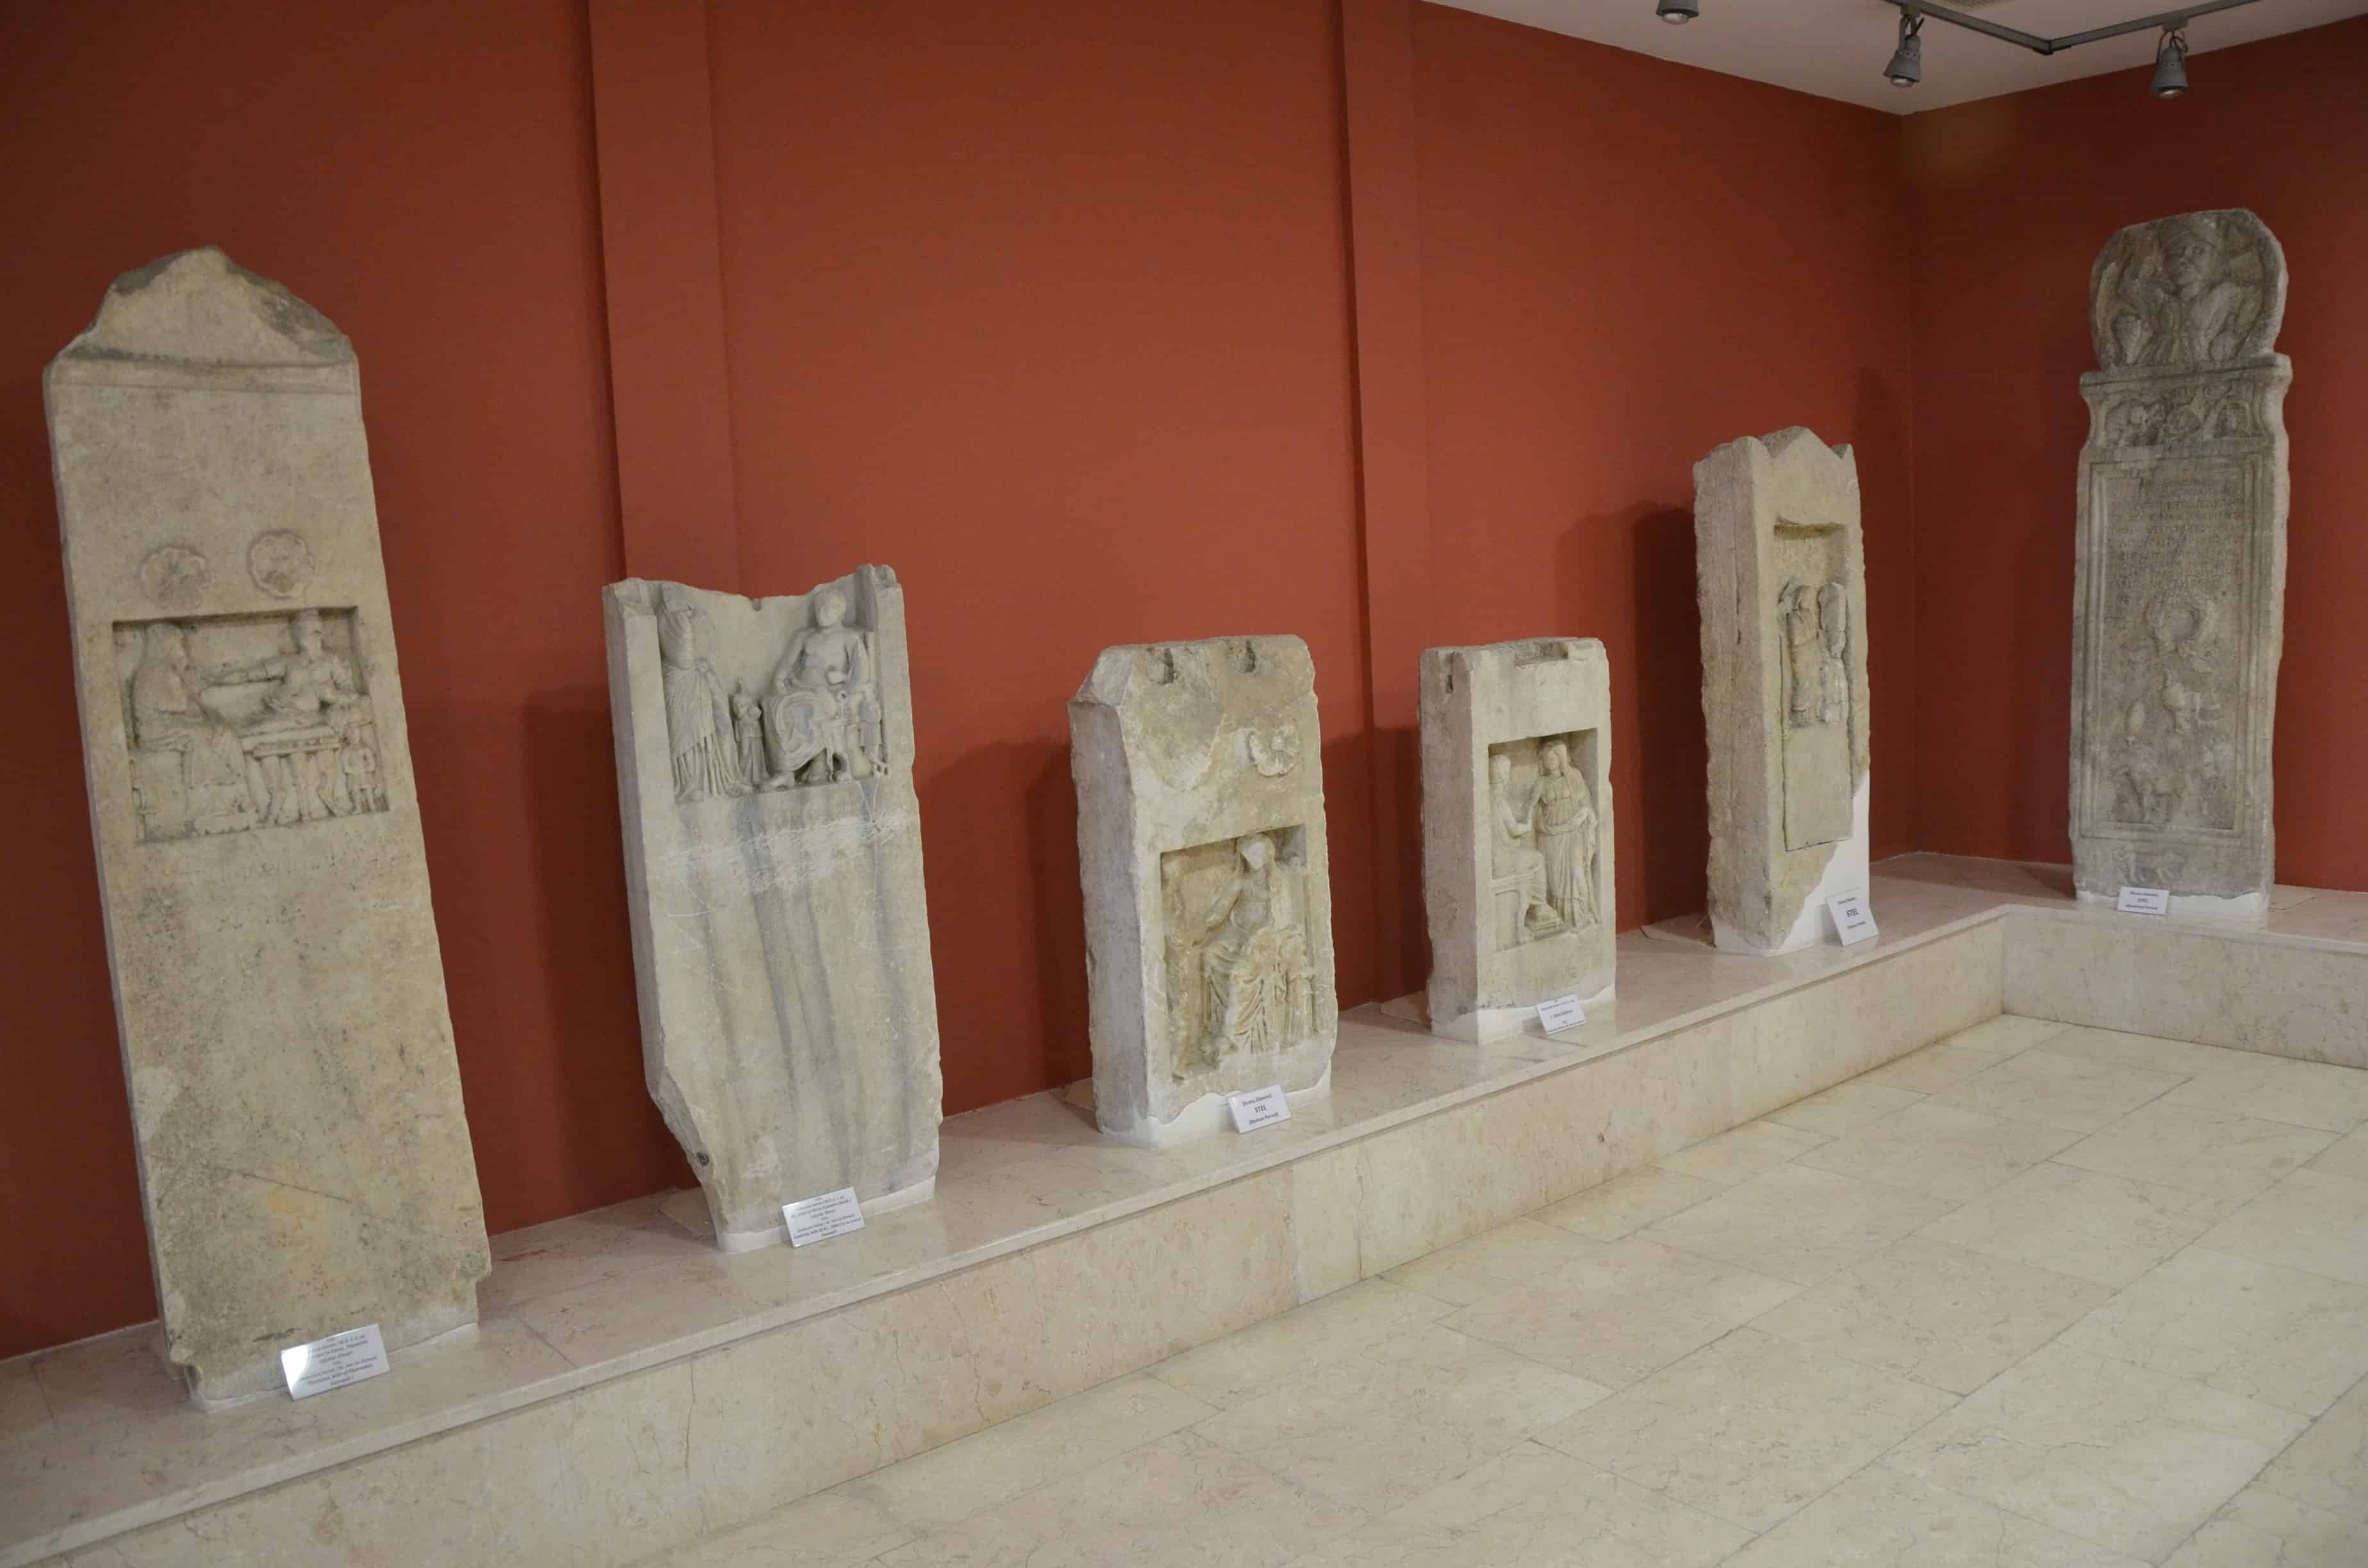 Arkeoloji Müzesi in Sinop, Turkey